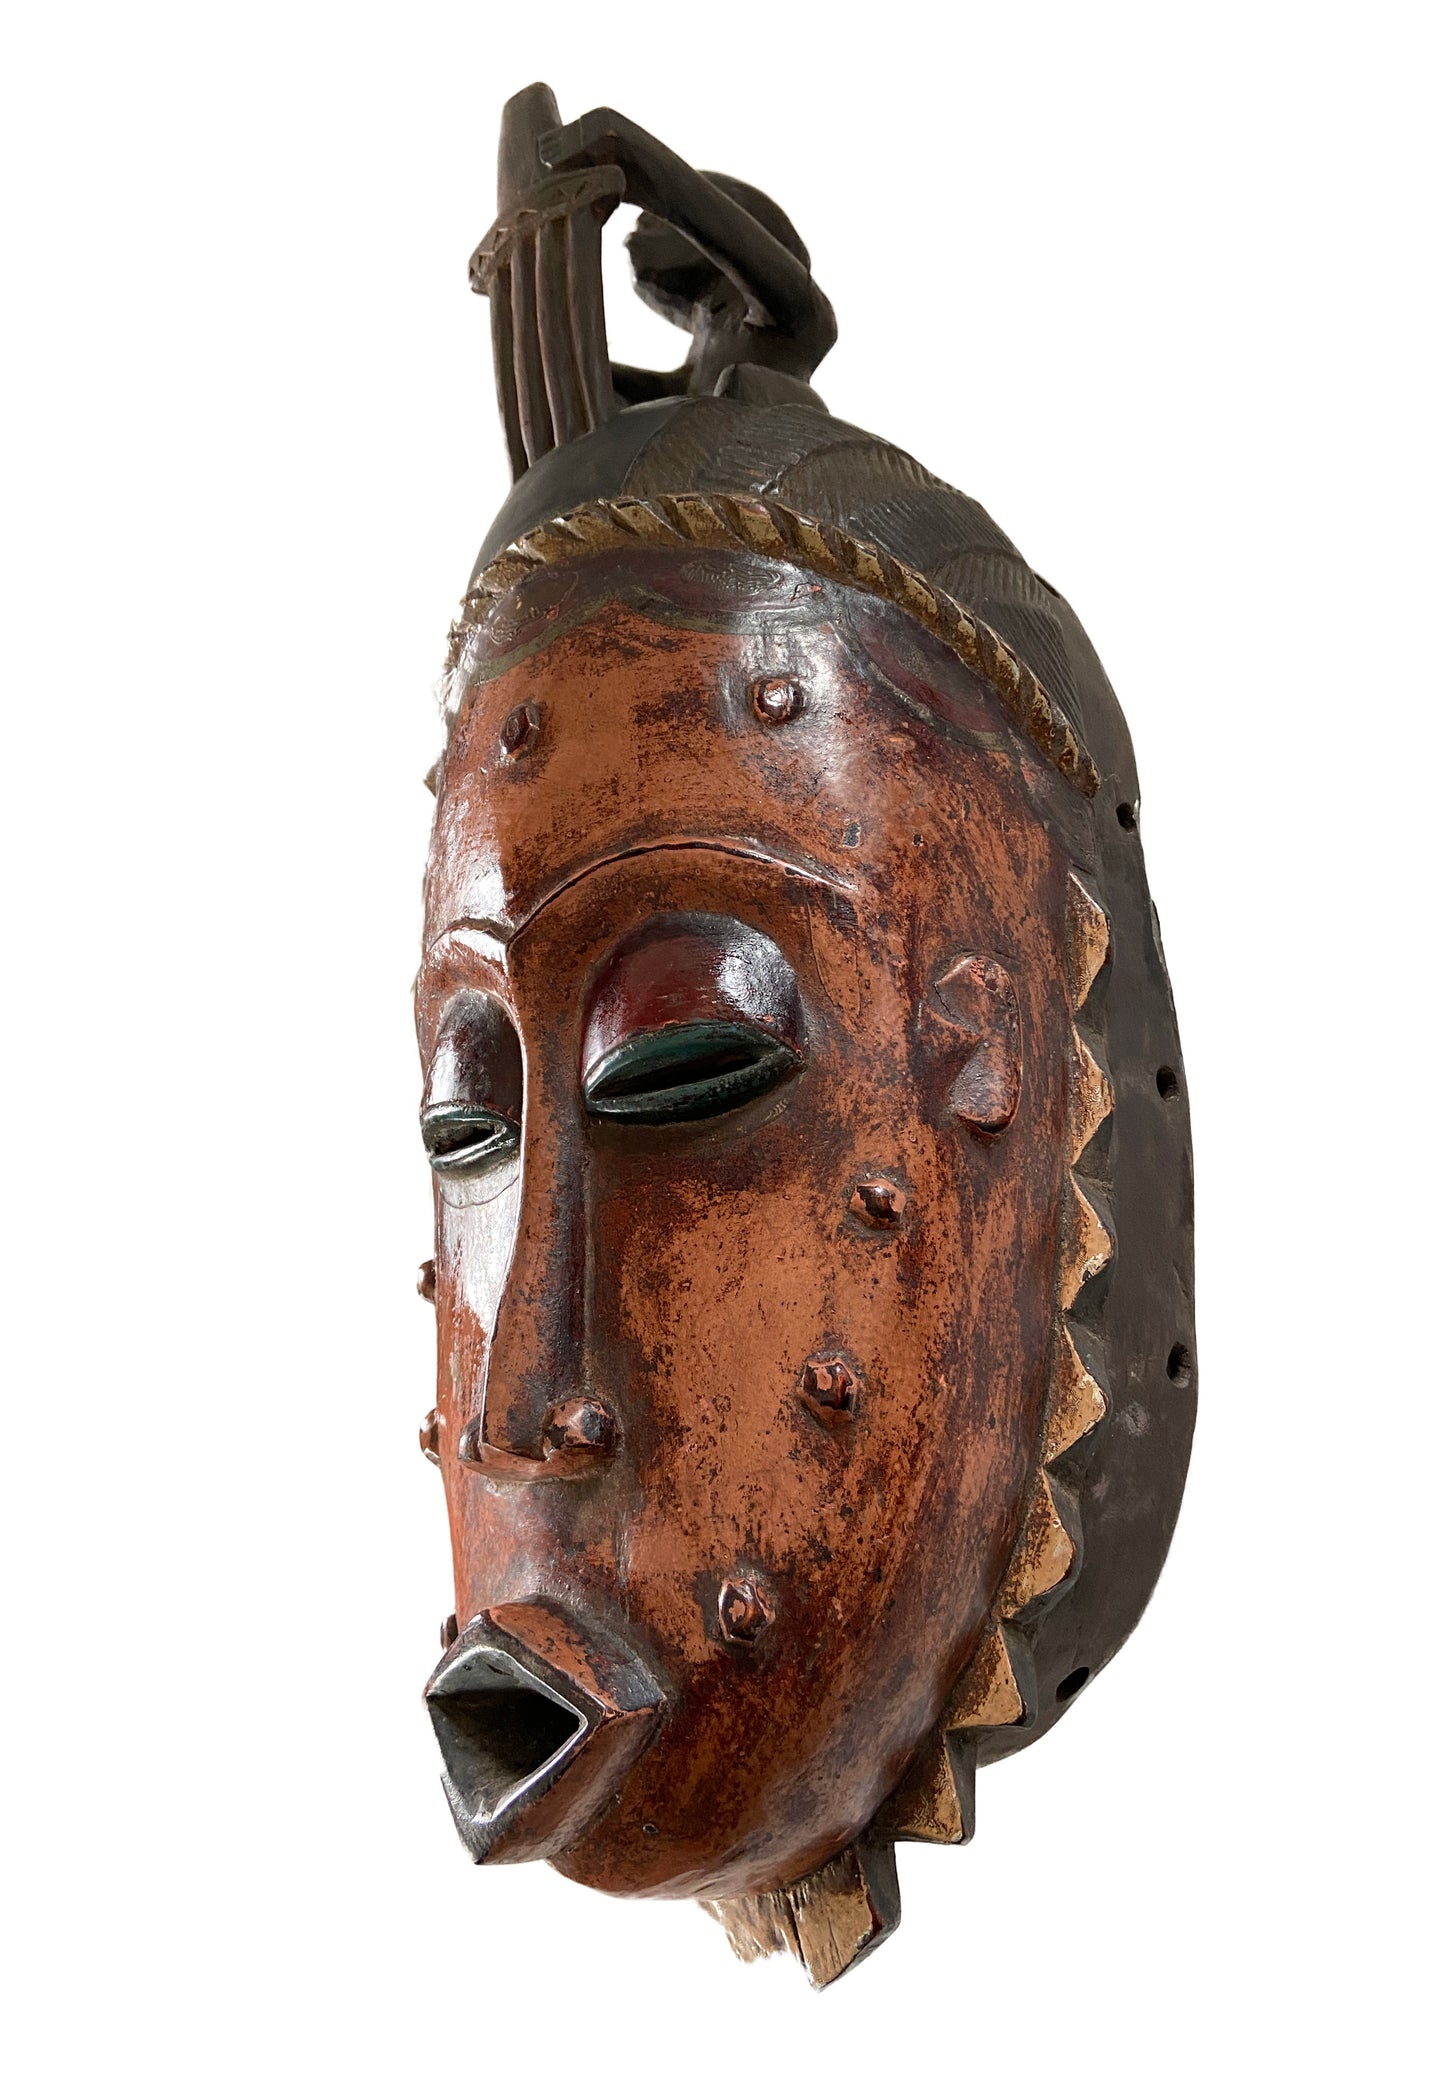 #960 Lg African Guru Portrait Mask Cote d'Ivoire 22.5" H